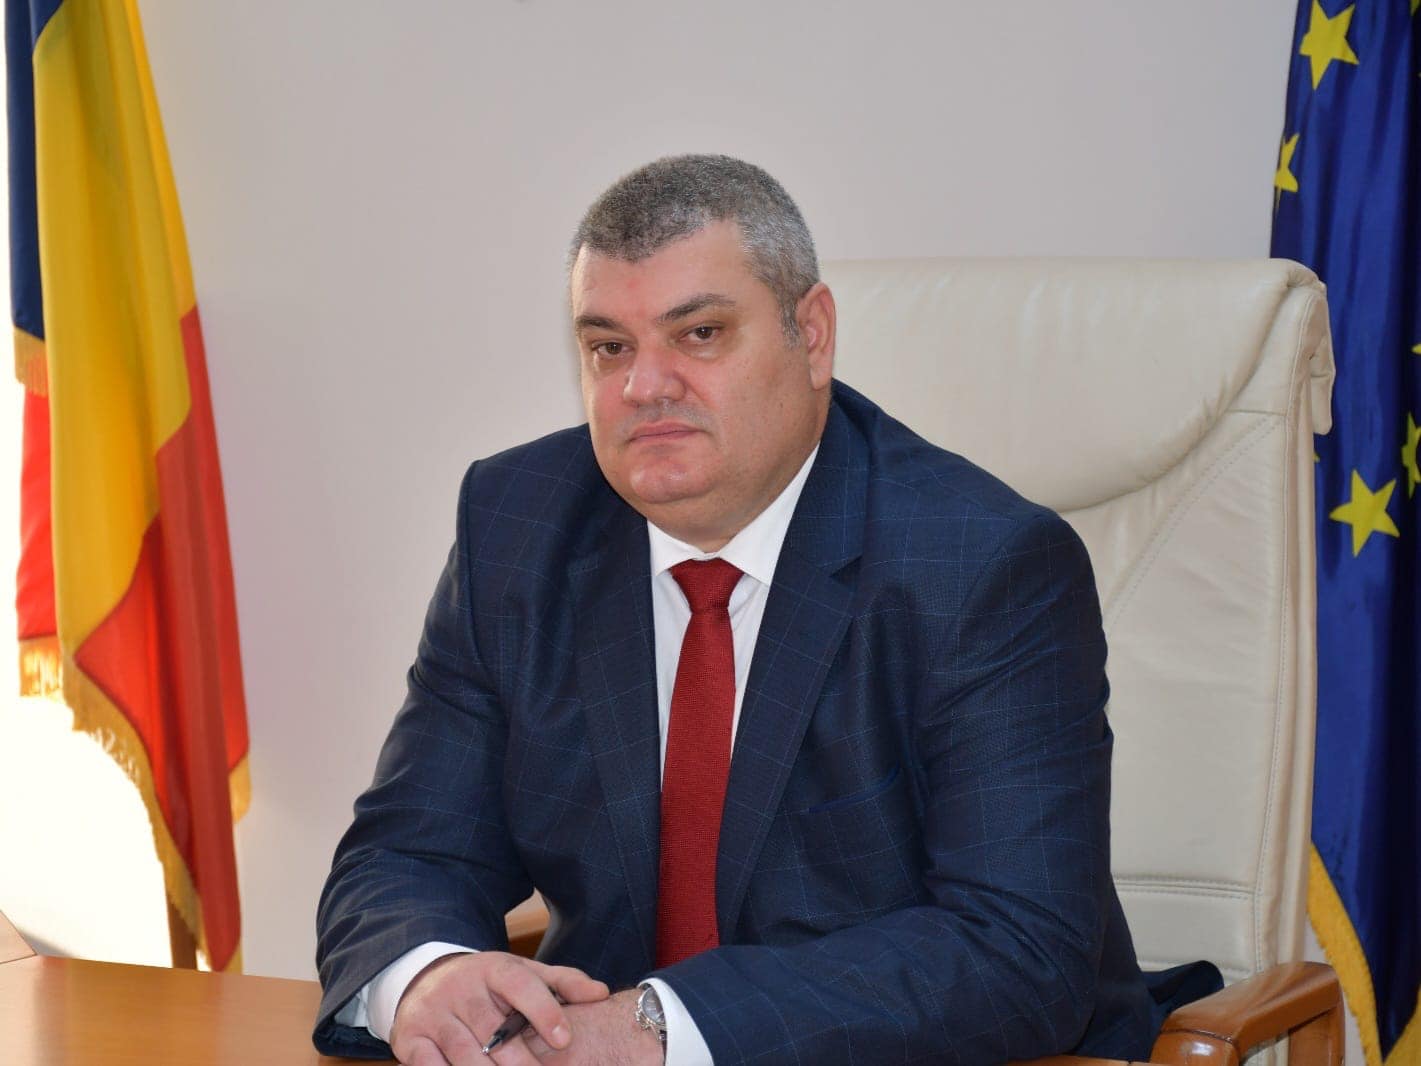 Prefectul județului Vâlcea le mulțumește vâlcenilor pentru acțiunile de solidaritate față de refugiații ucraineni